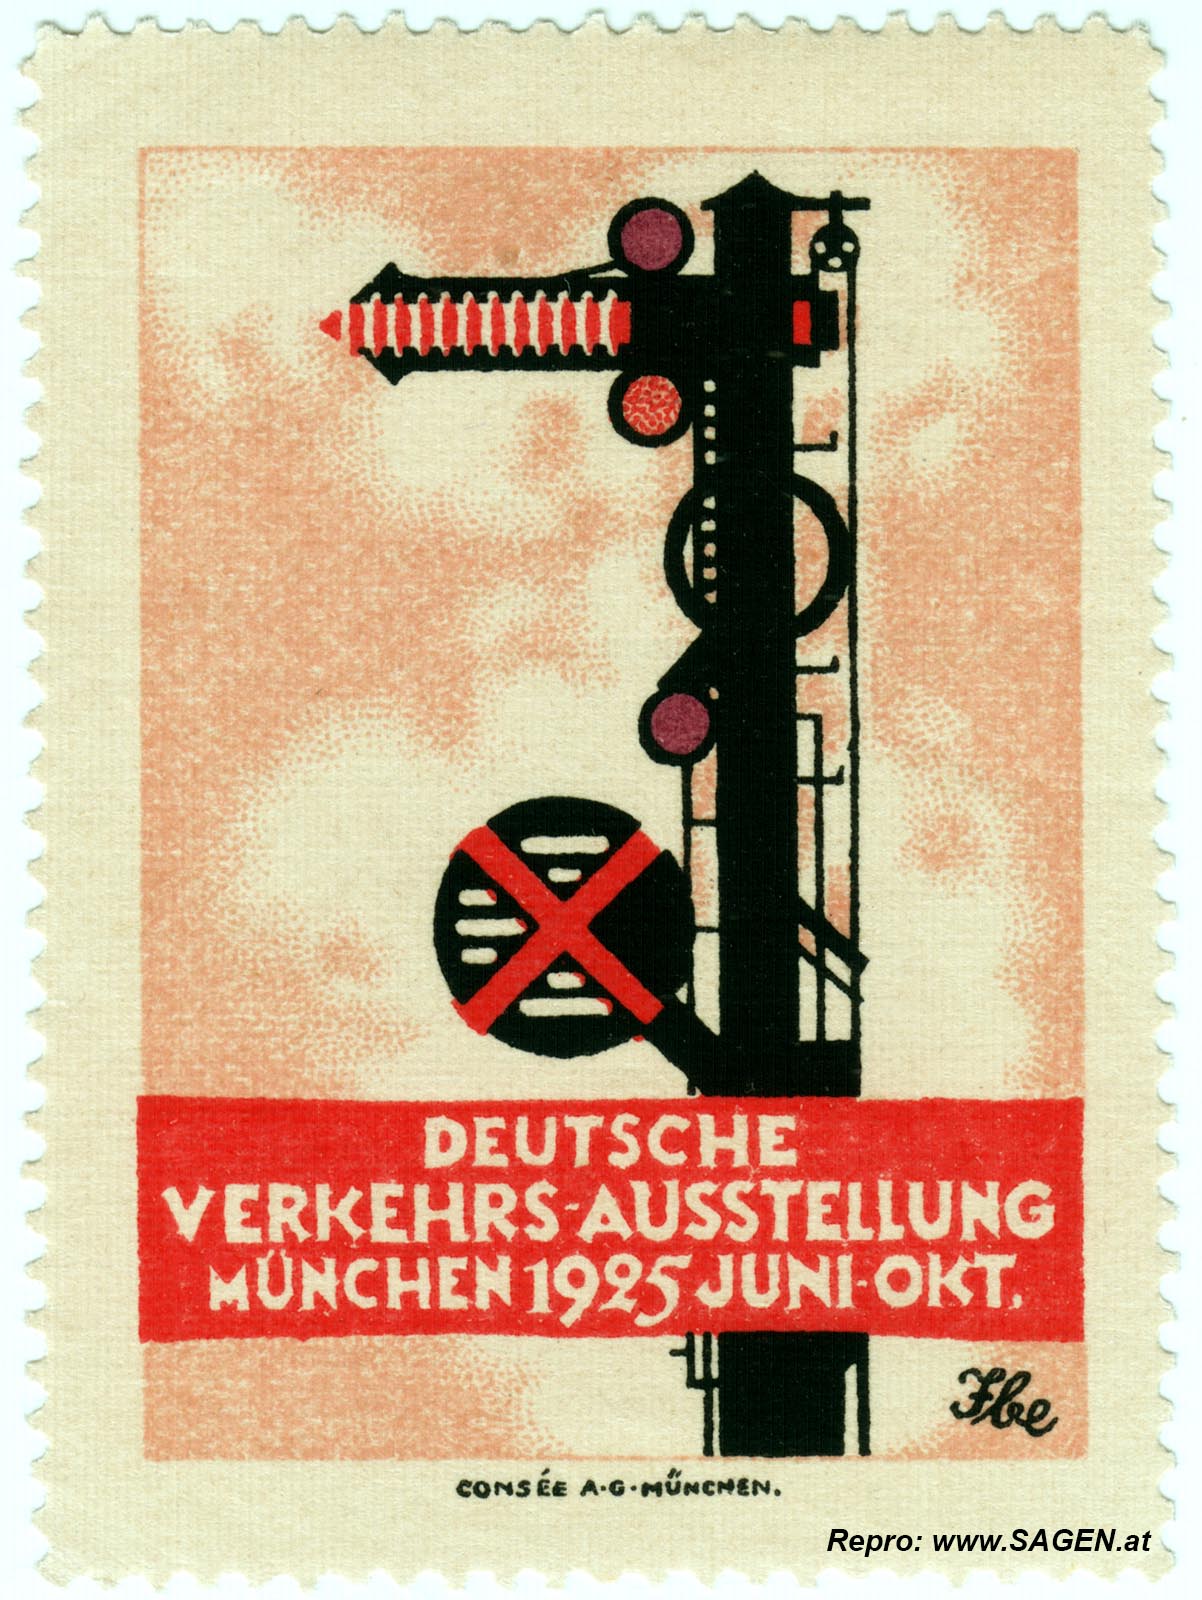 Verkehrs-Ausstellung München 1925